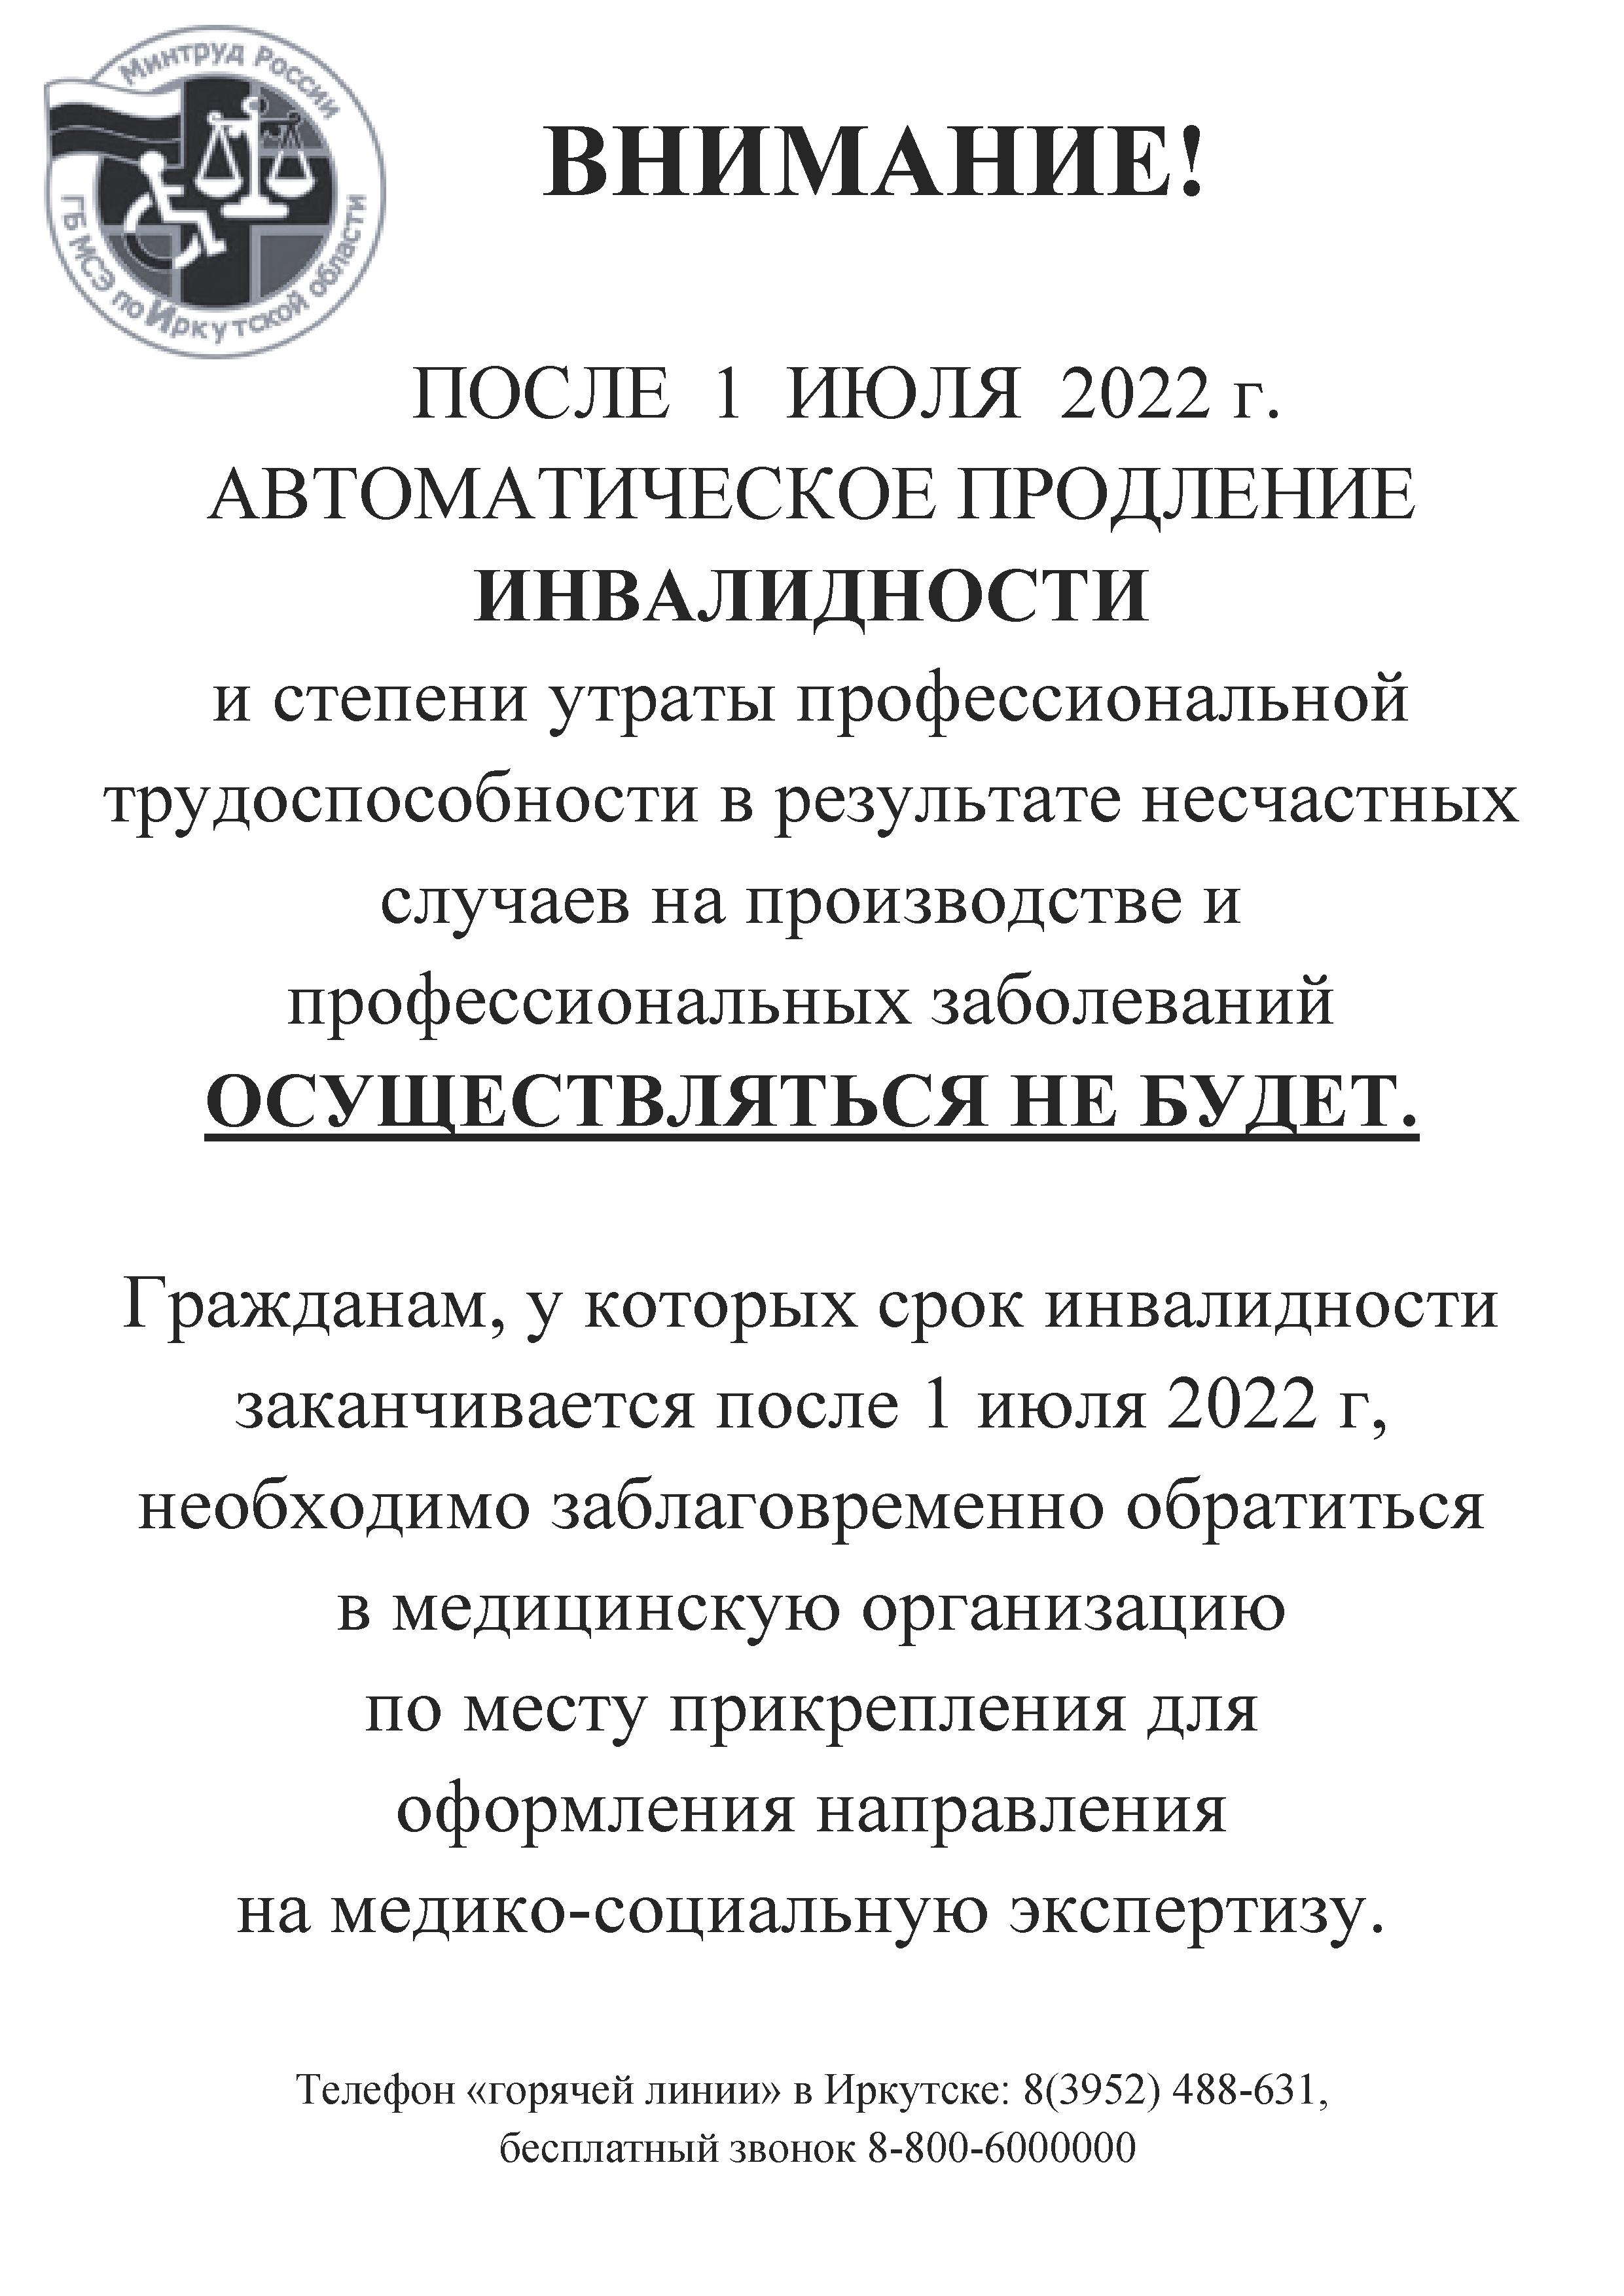 Закон Иркутской области: основные положения и важные изменения